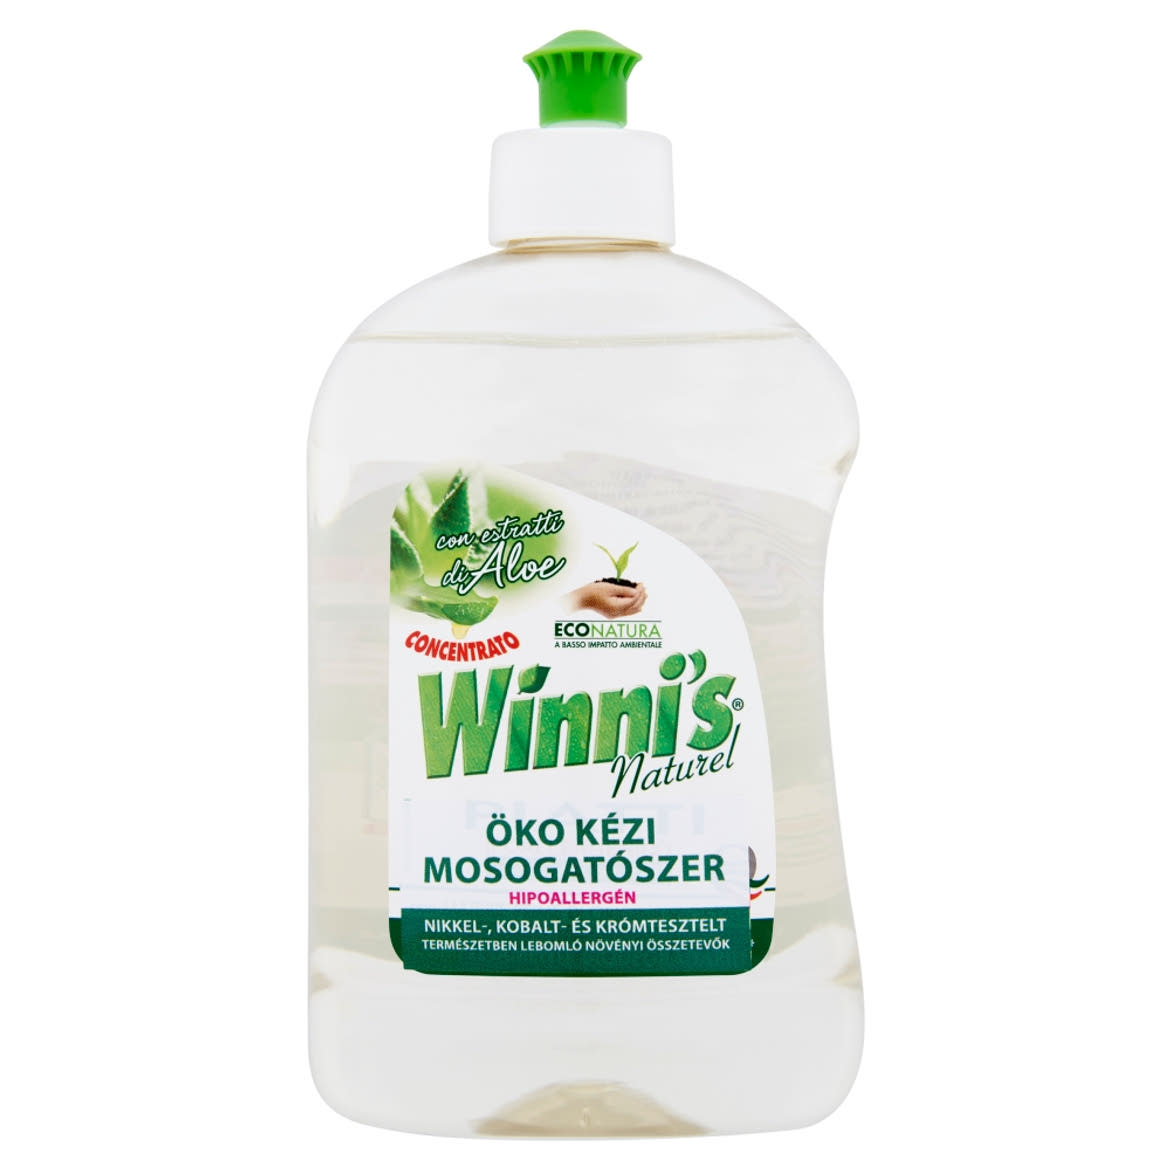 Winni's Naturel öko kézi mosogatószer